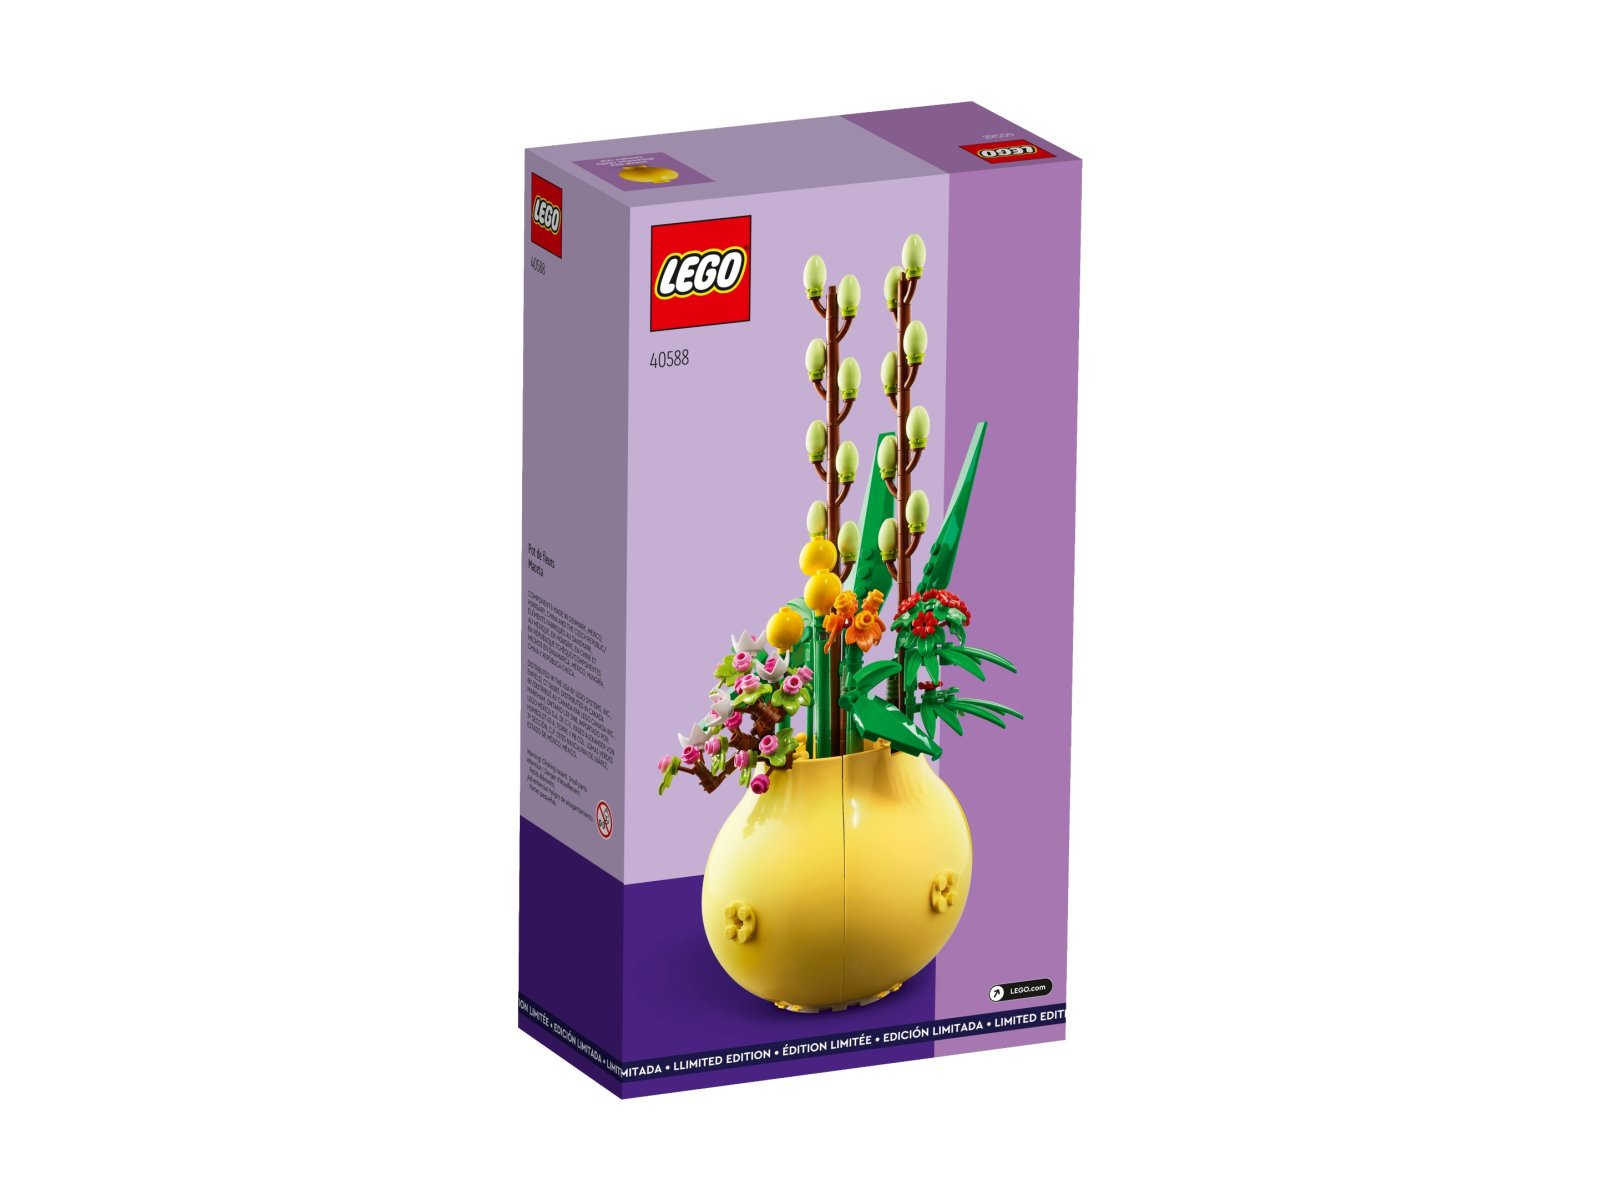 LEGO 40588 Doniczka